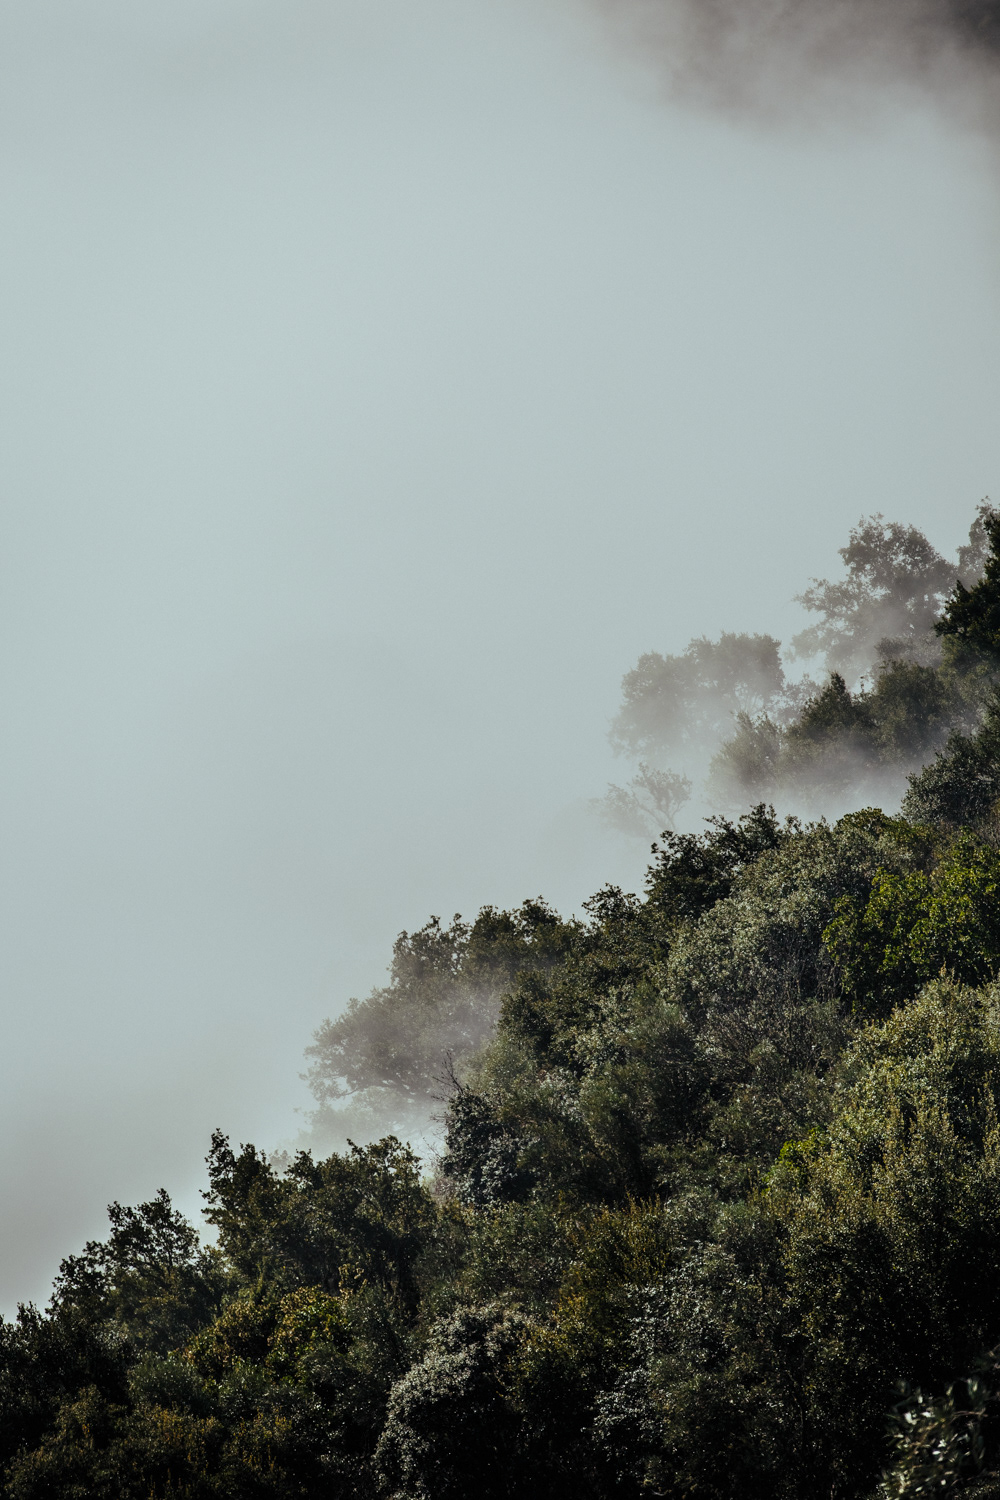 alvaro martino landscapes Alijó Portugal paisagens fog nevoeiro Douro Sun clouds